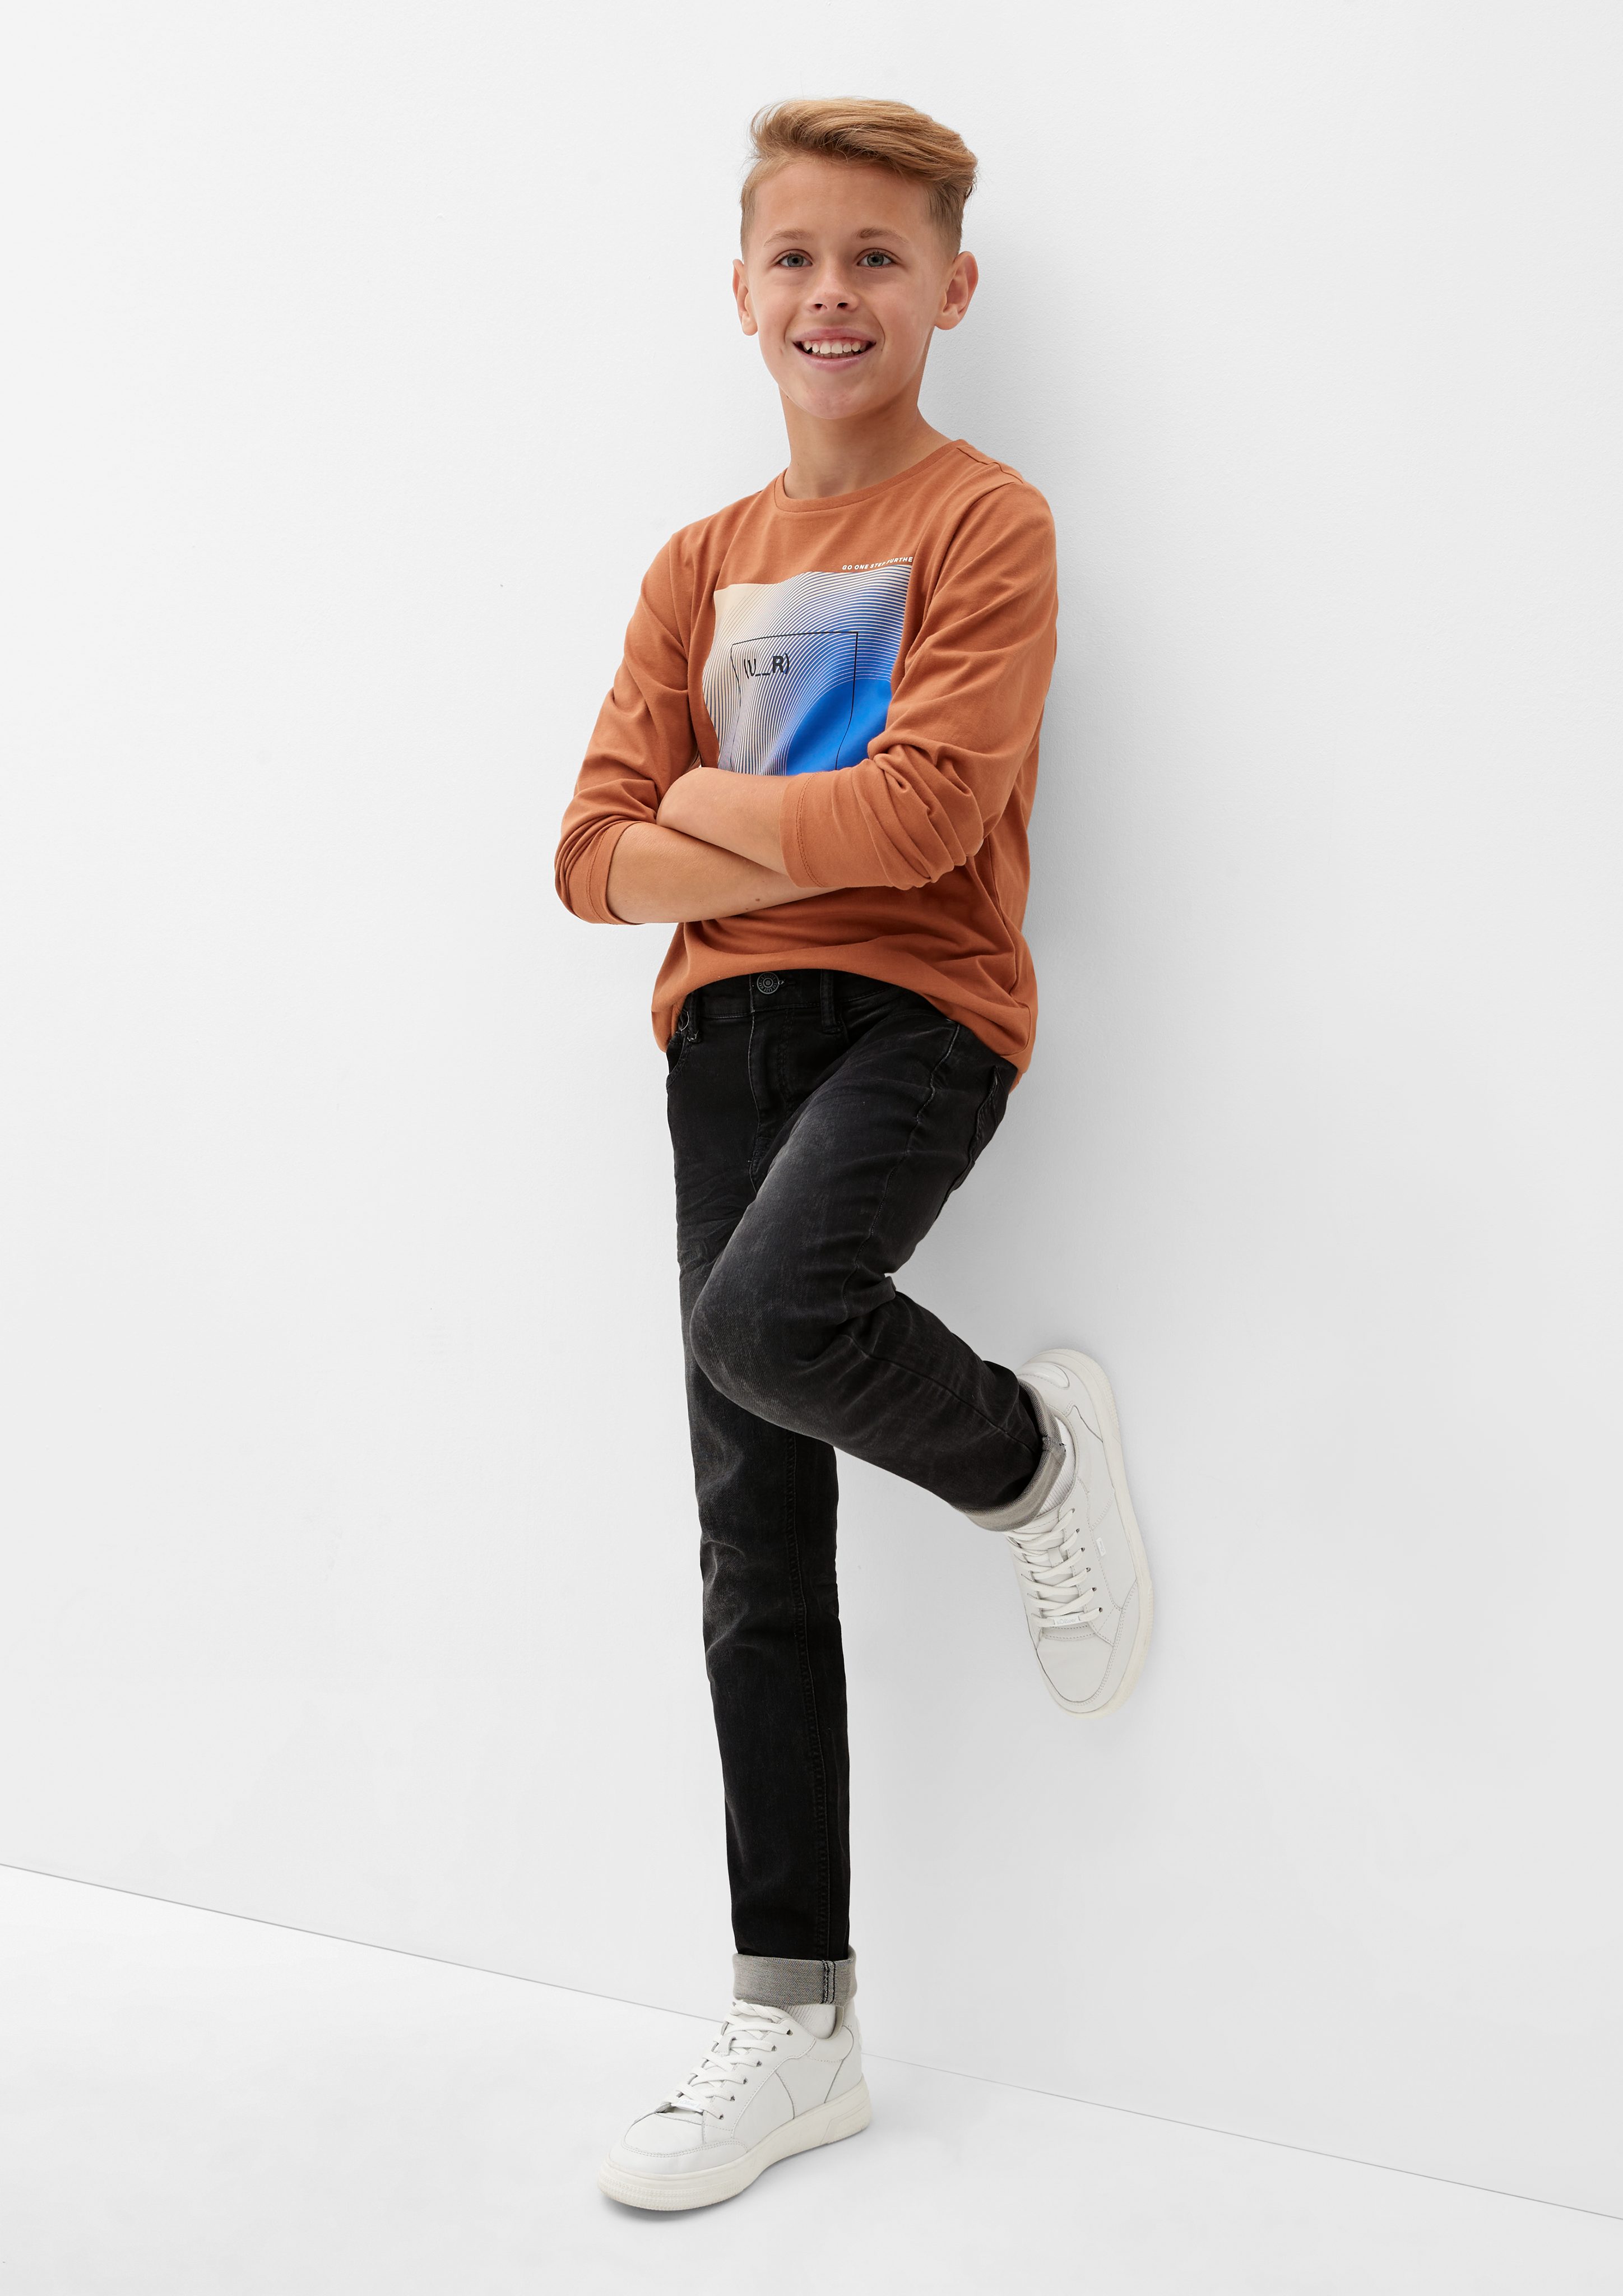 Junior Waschung / s.Oliver / Rise Fit s.Oliver Jeans Regular 5-Pocket-Jeans Mid / Slim Seattle Leg